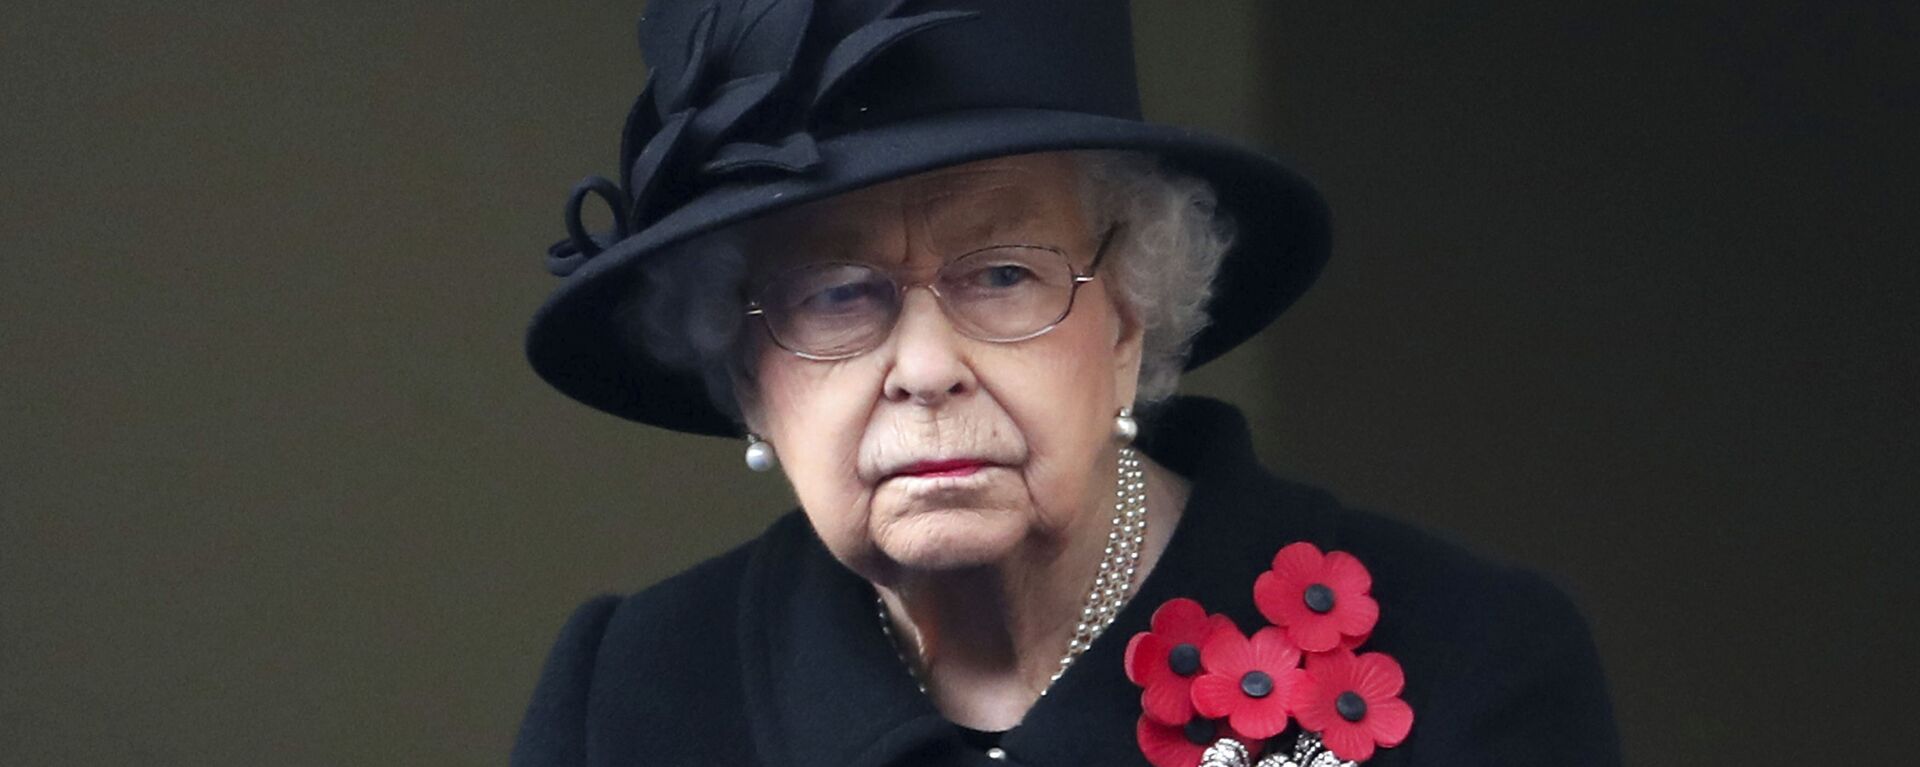 Nữ hoàng Elizabeth II của Anh nhìn từ ban công của Bộ Ngoại giao, trong buổi lễ Chủ nhật tưởng nhớ tại Cenotaph, ở Whitehall, London, Chủ nhật ngày 8 tháng 11 năm 2020 - Sputnik Việt Nam, 1920, 10.04.2021